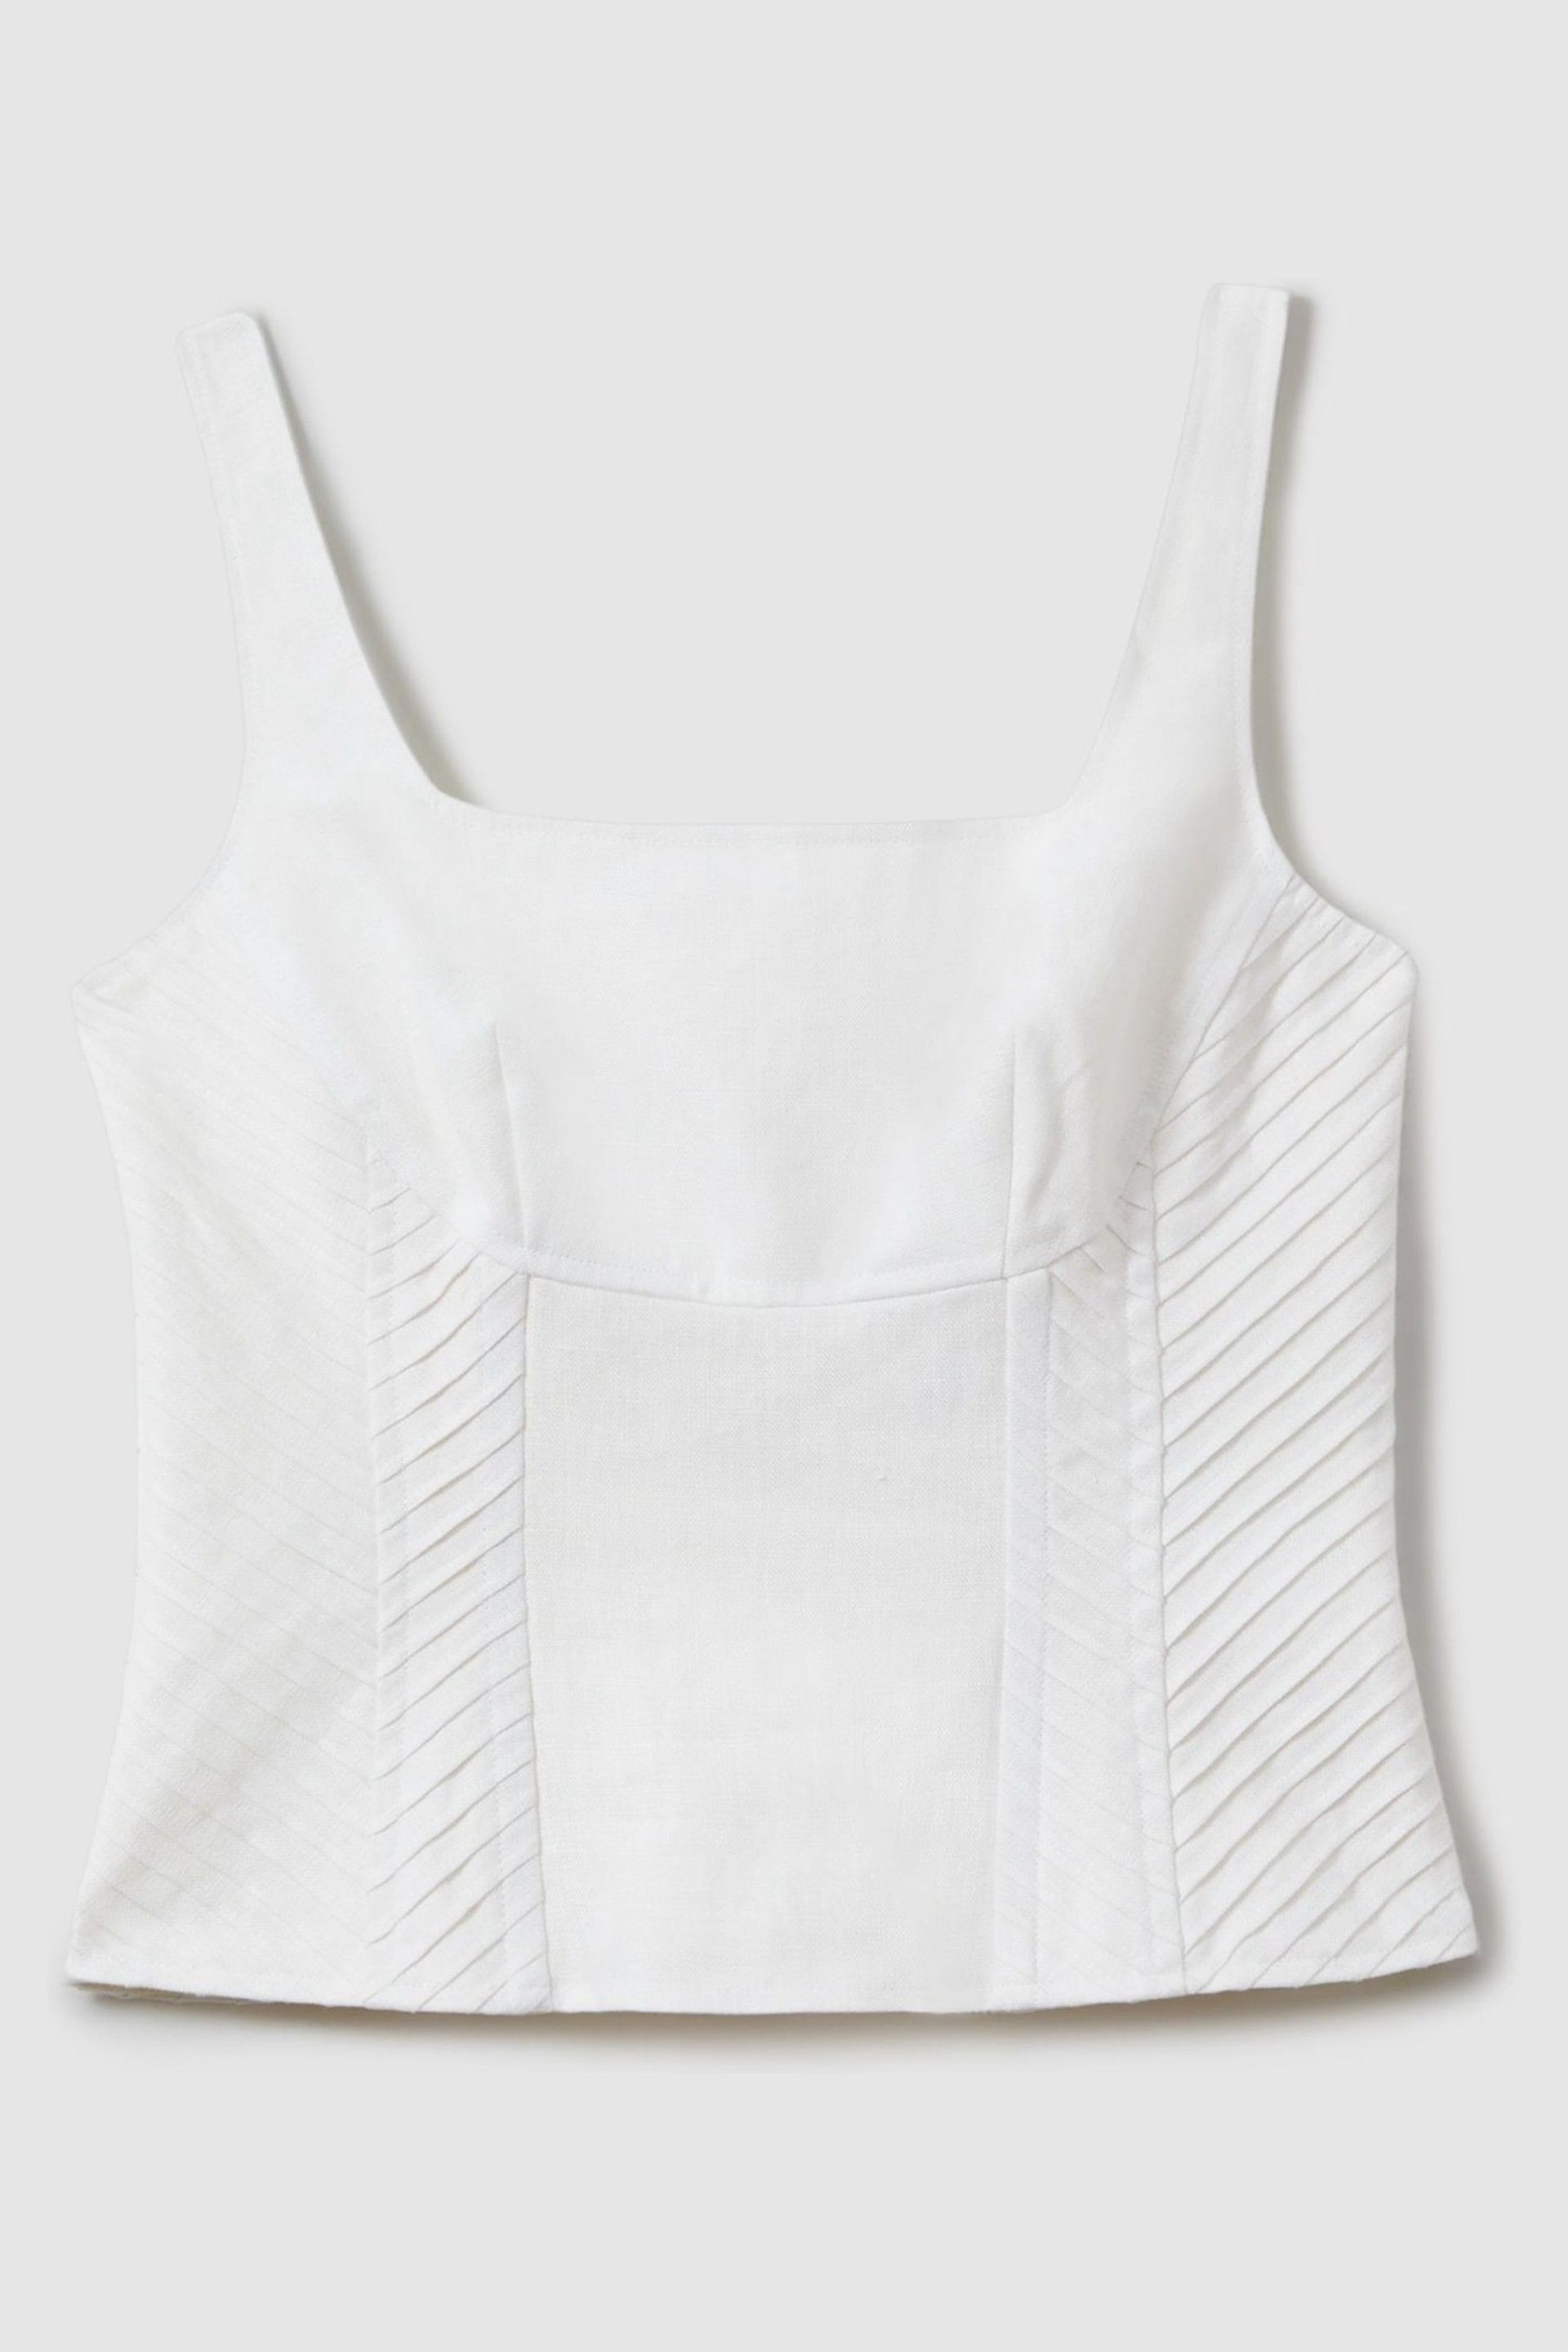 Reiss Cream Mirabelle Linen Corset Vest - Image 2 of 4